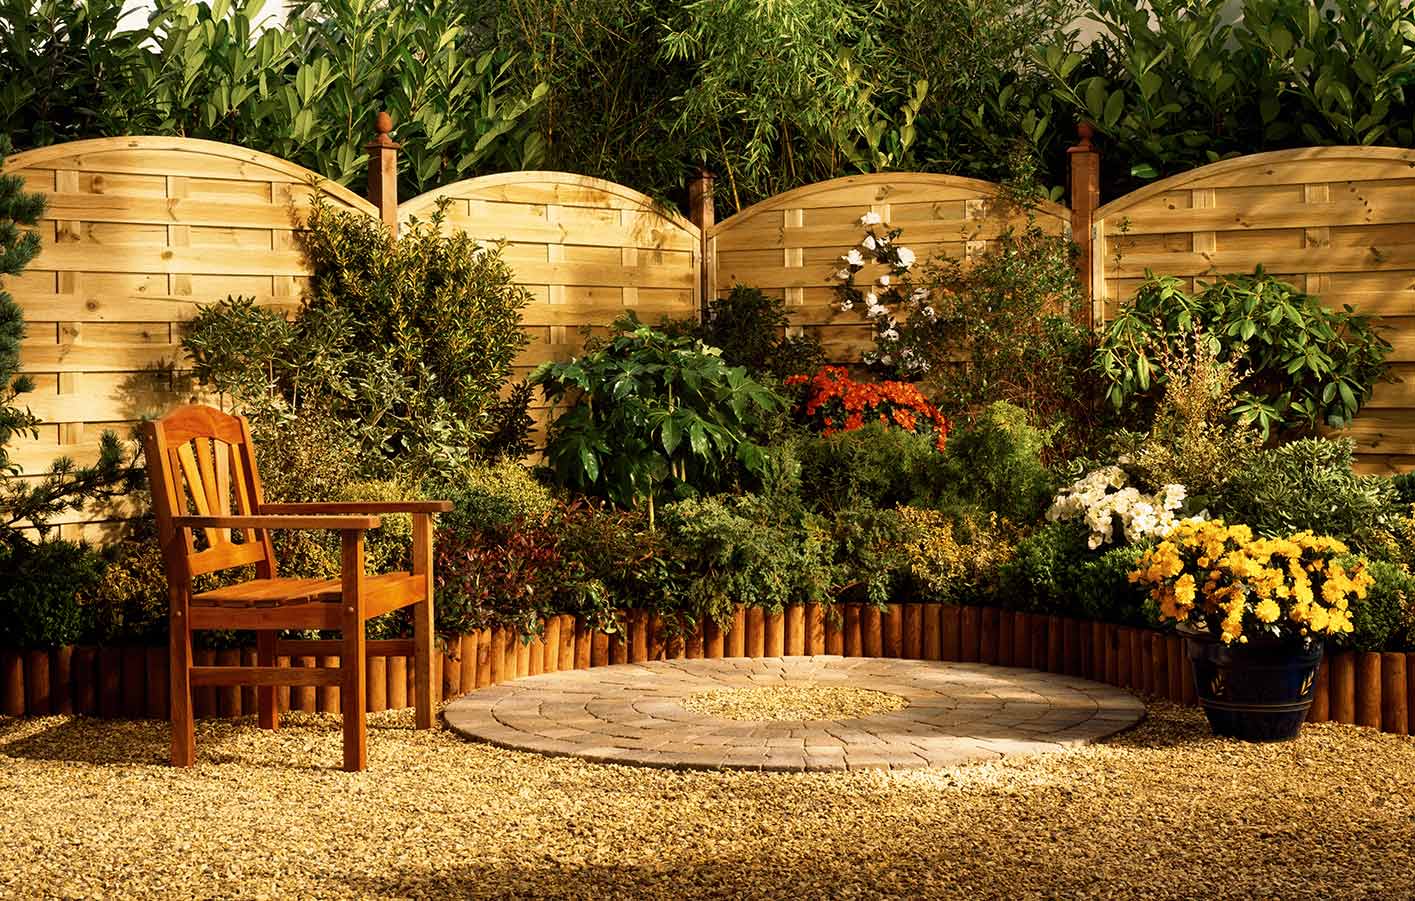 Sichtschutz aus Holz in einem grünen Garten mit Gartenmöbeln aus Holz